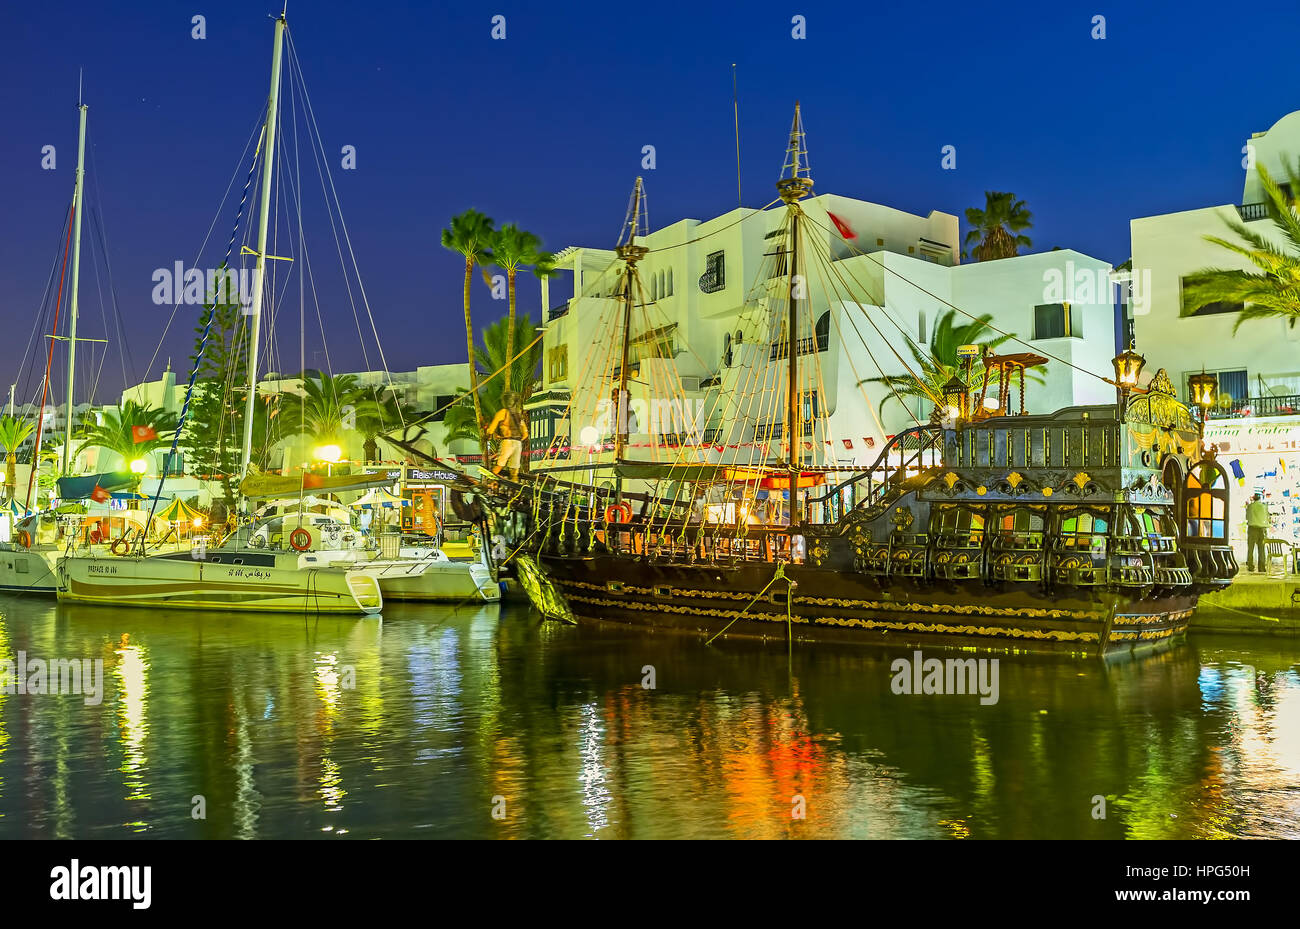 EL KANTAOUI, TUNISIE - 28 août 2015 : La soirée port propose différentes attractions pour les touristes, les gens visitent les restaurants locaux, décrochage souvenirs Banque D'Images